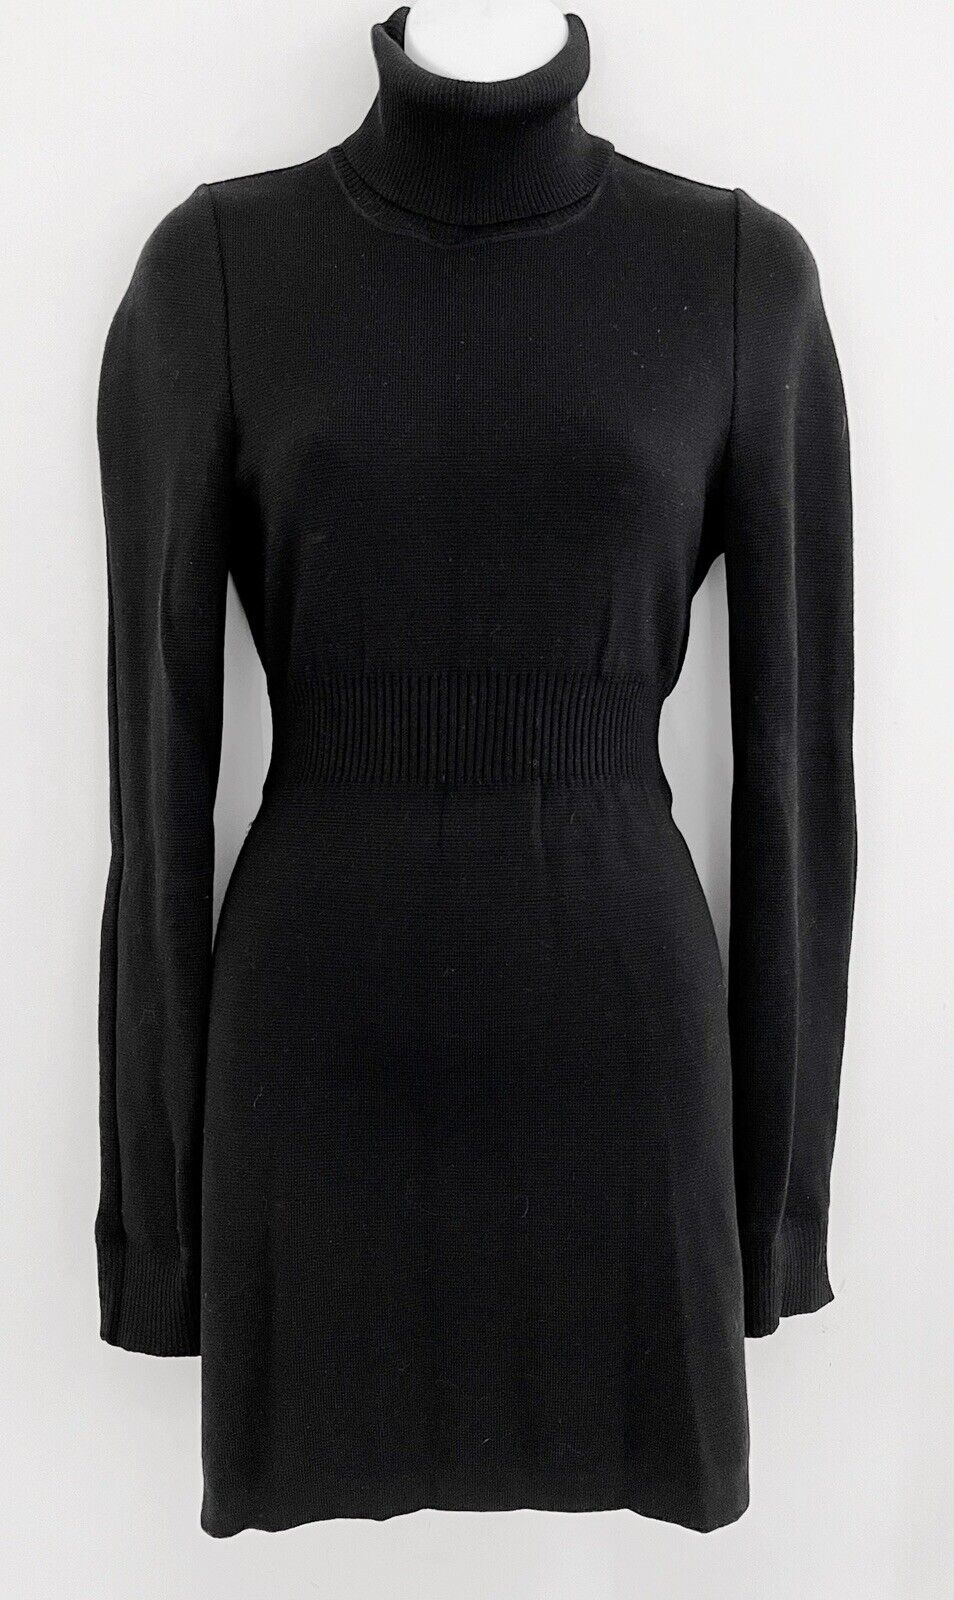 Vintage HAUTE VINCENZO DE COTIIS Italy Designer Women Knit Dress 40 Sz S Black